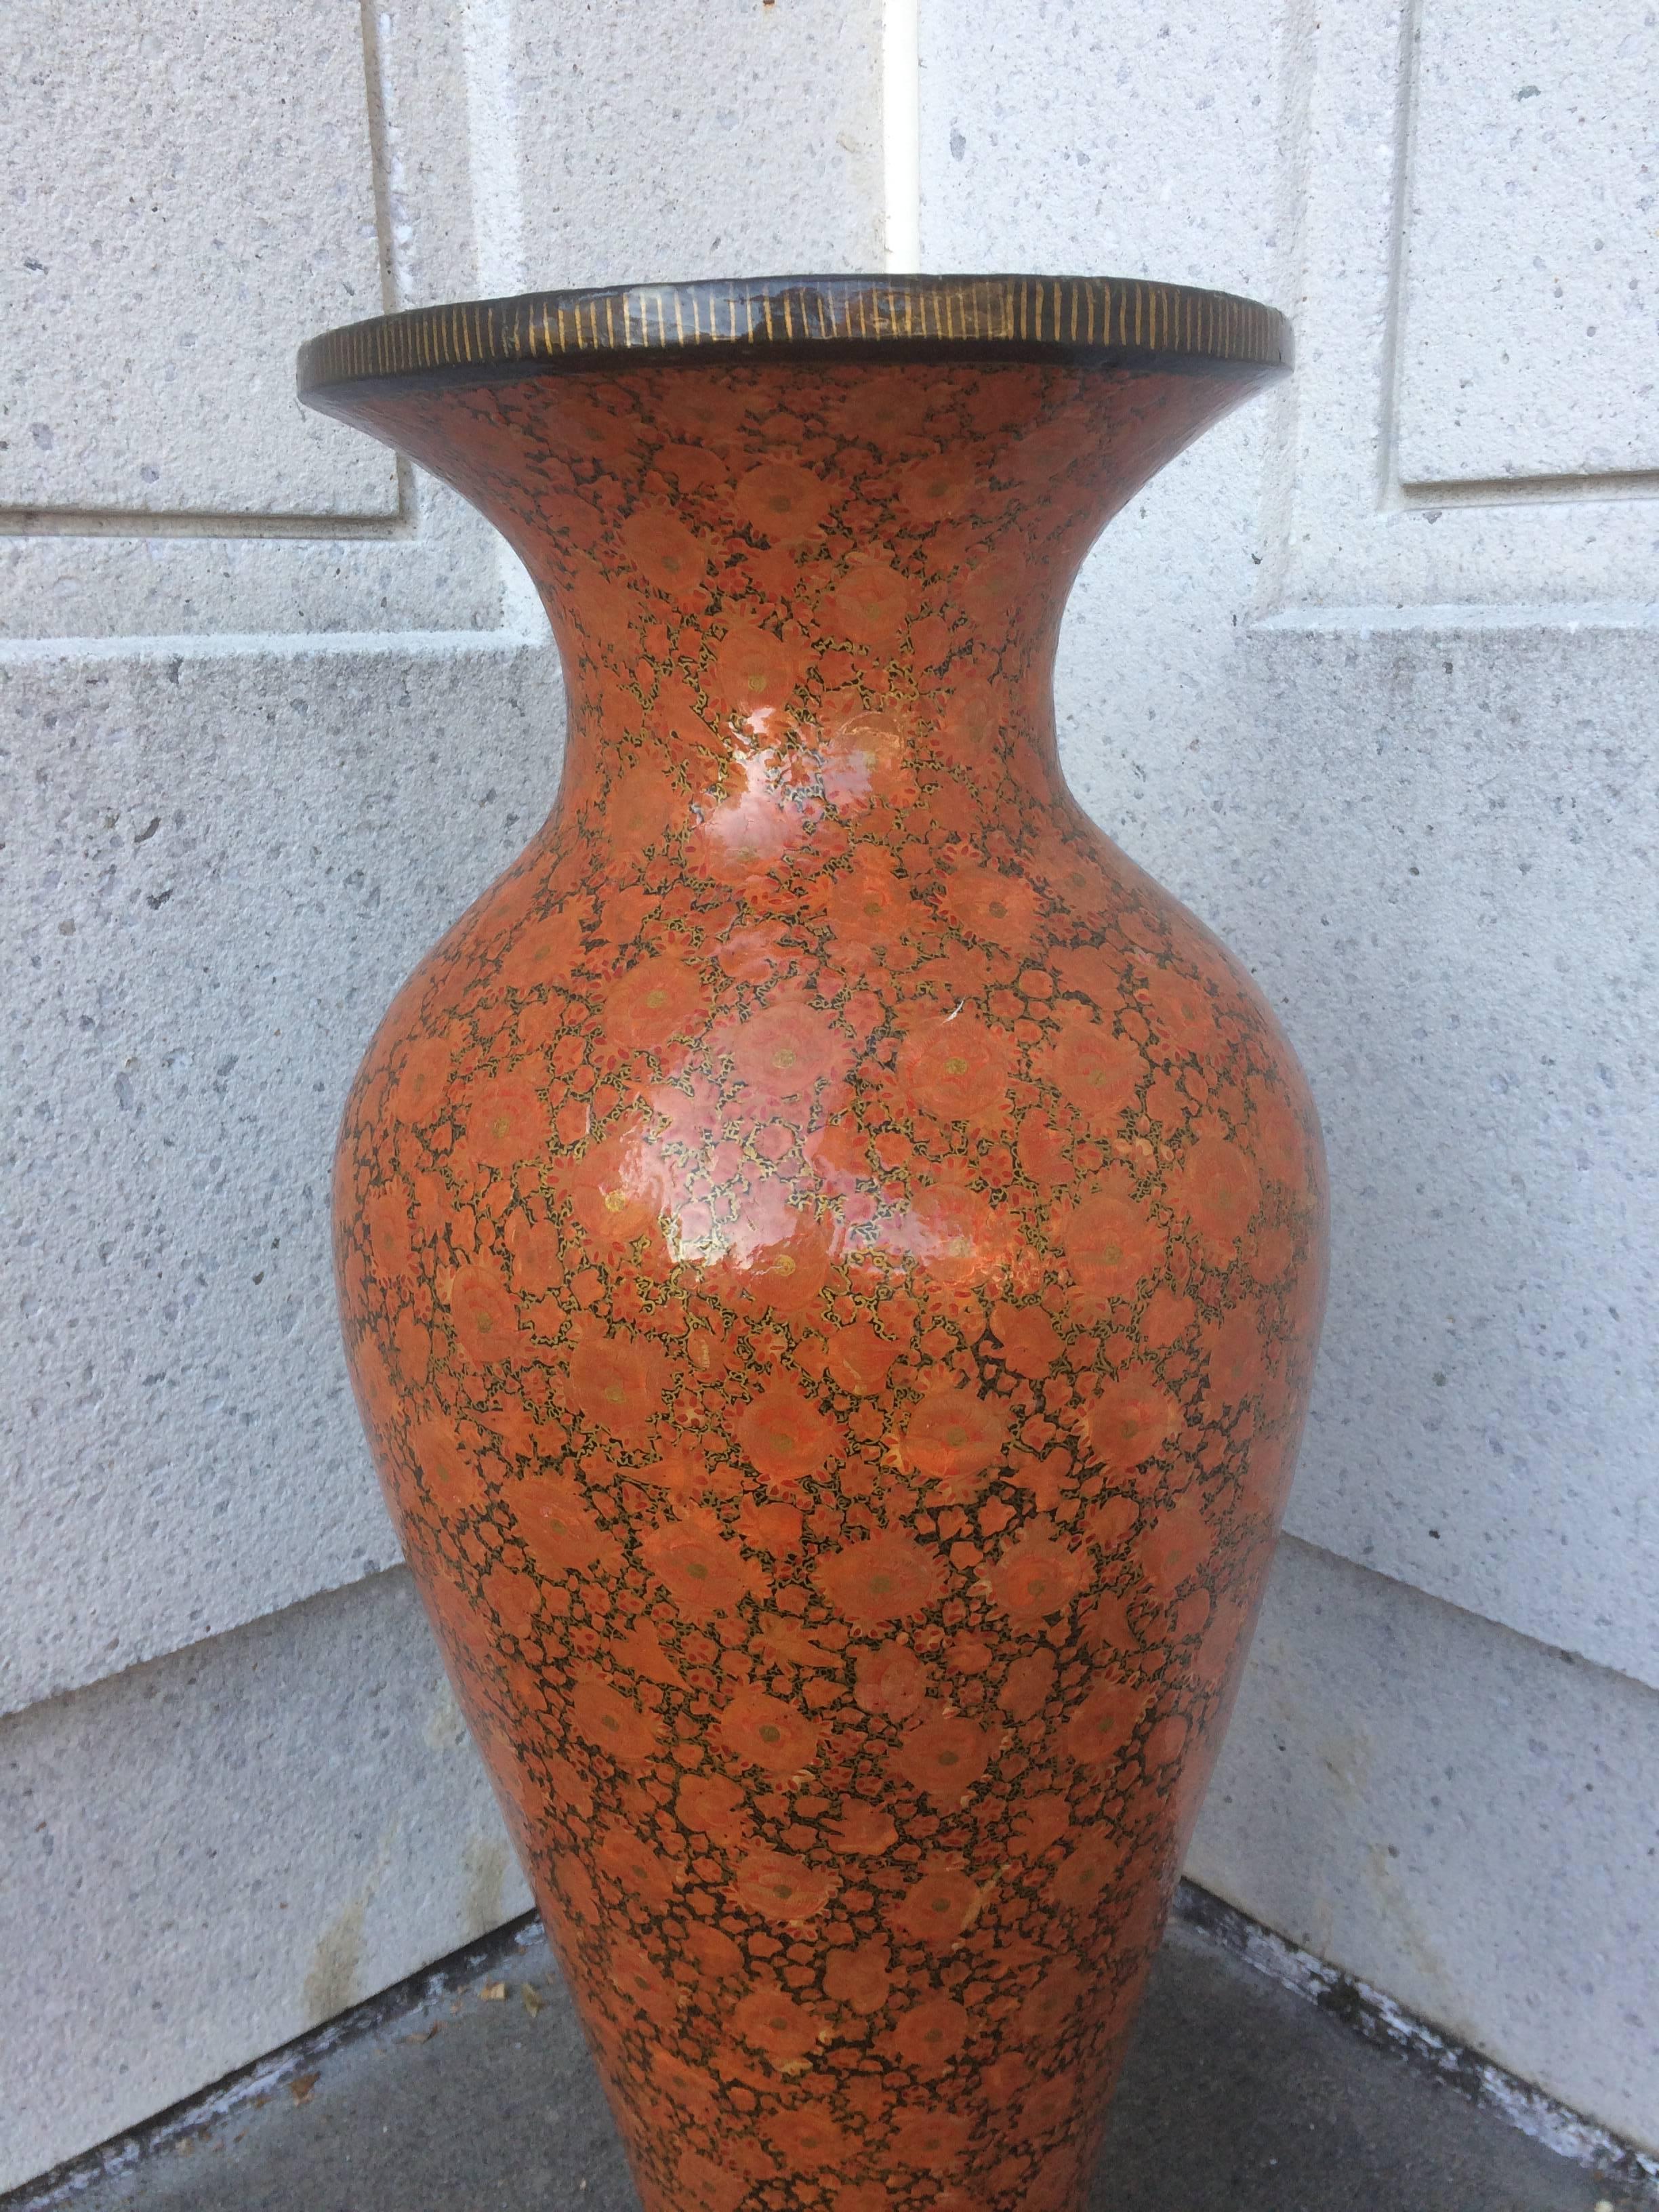 Superbe vase en papier mâché de grande taille, de forme élégante, avec une belle décoration florale abstraite rouge et noire peinte et laquée à la main. Cachemire.

3 pieds de haut